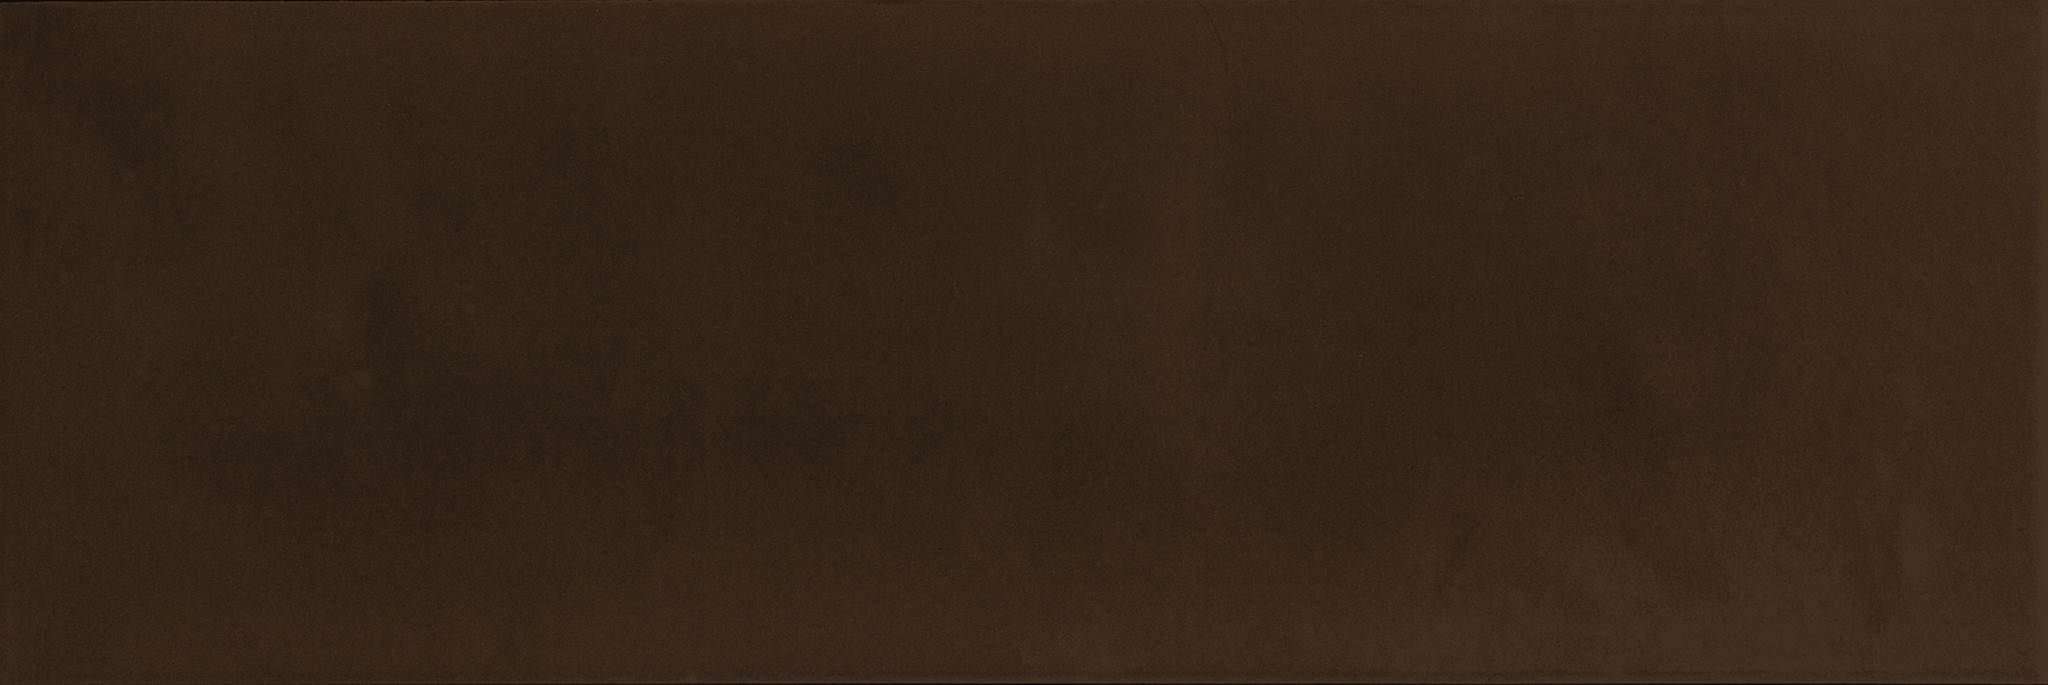 Керамическая плитка Absolut Keramika Masia Milano Brillo Chocolate, цвет коричневый, поверхность глянцевая, прямоугольник, 100x300